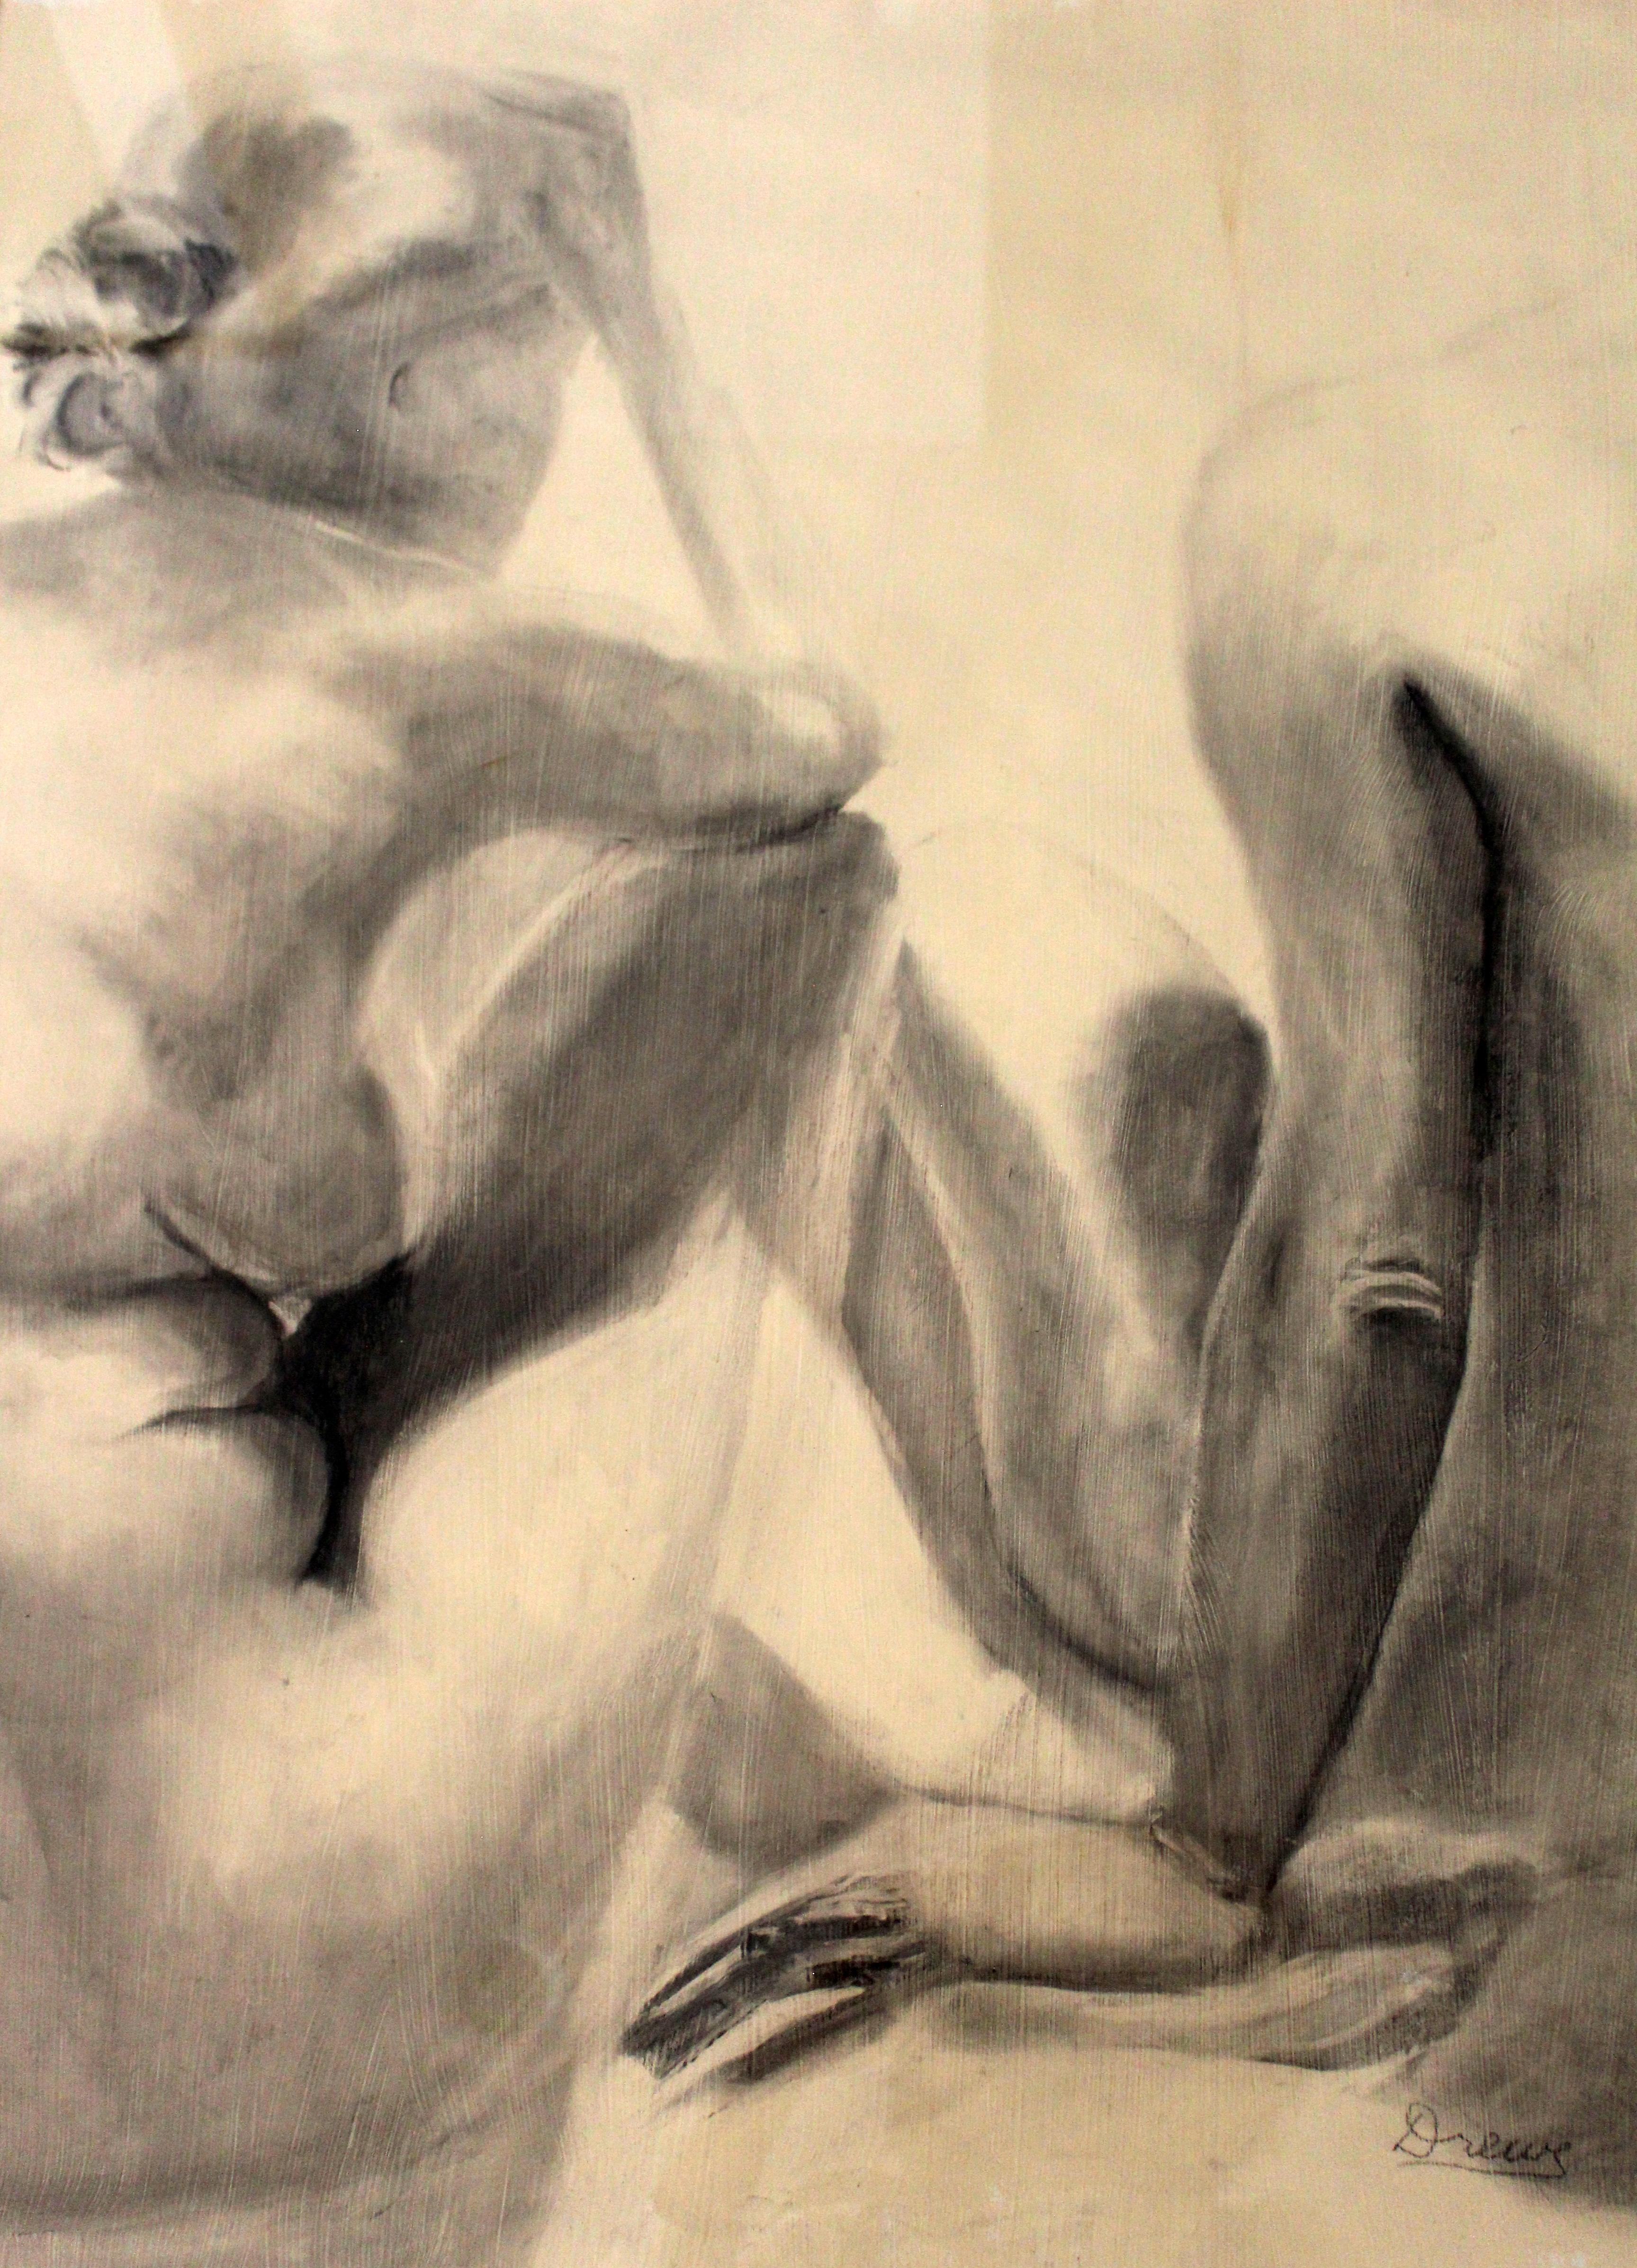 Papier Drawing moderne contemporain encadré d'un charbon de bois, signé Drewe, représentant une figure nue en vente